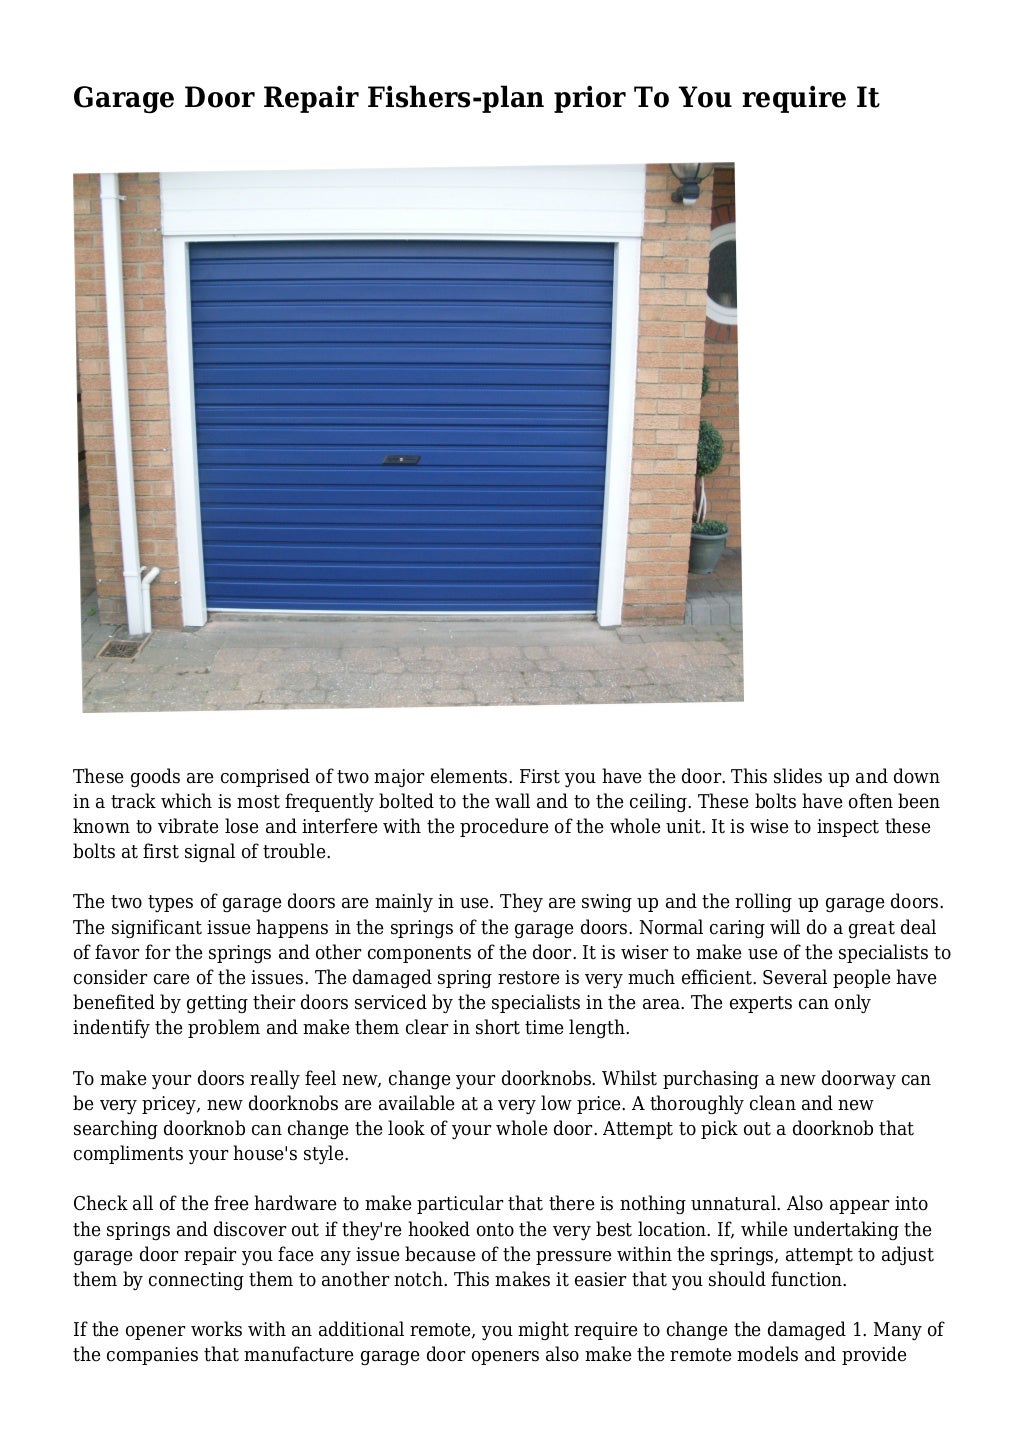 Creatice Garage Door Maintenance Plan for Large Space